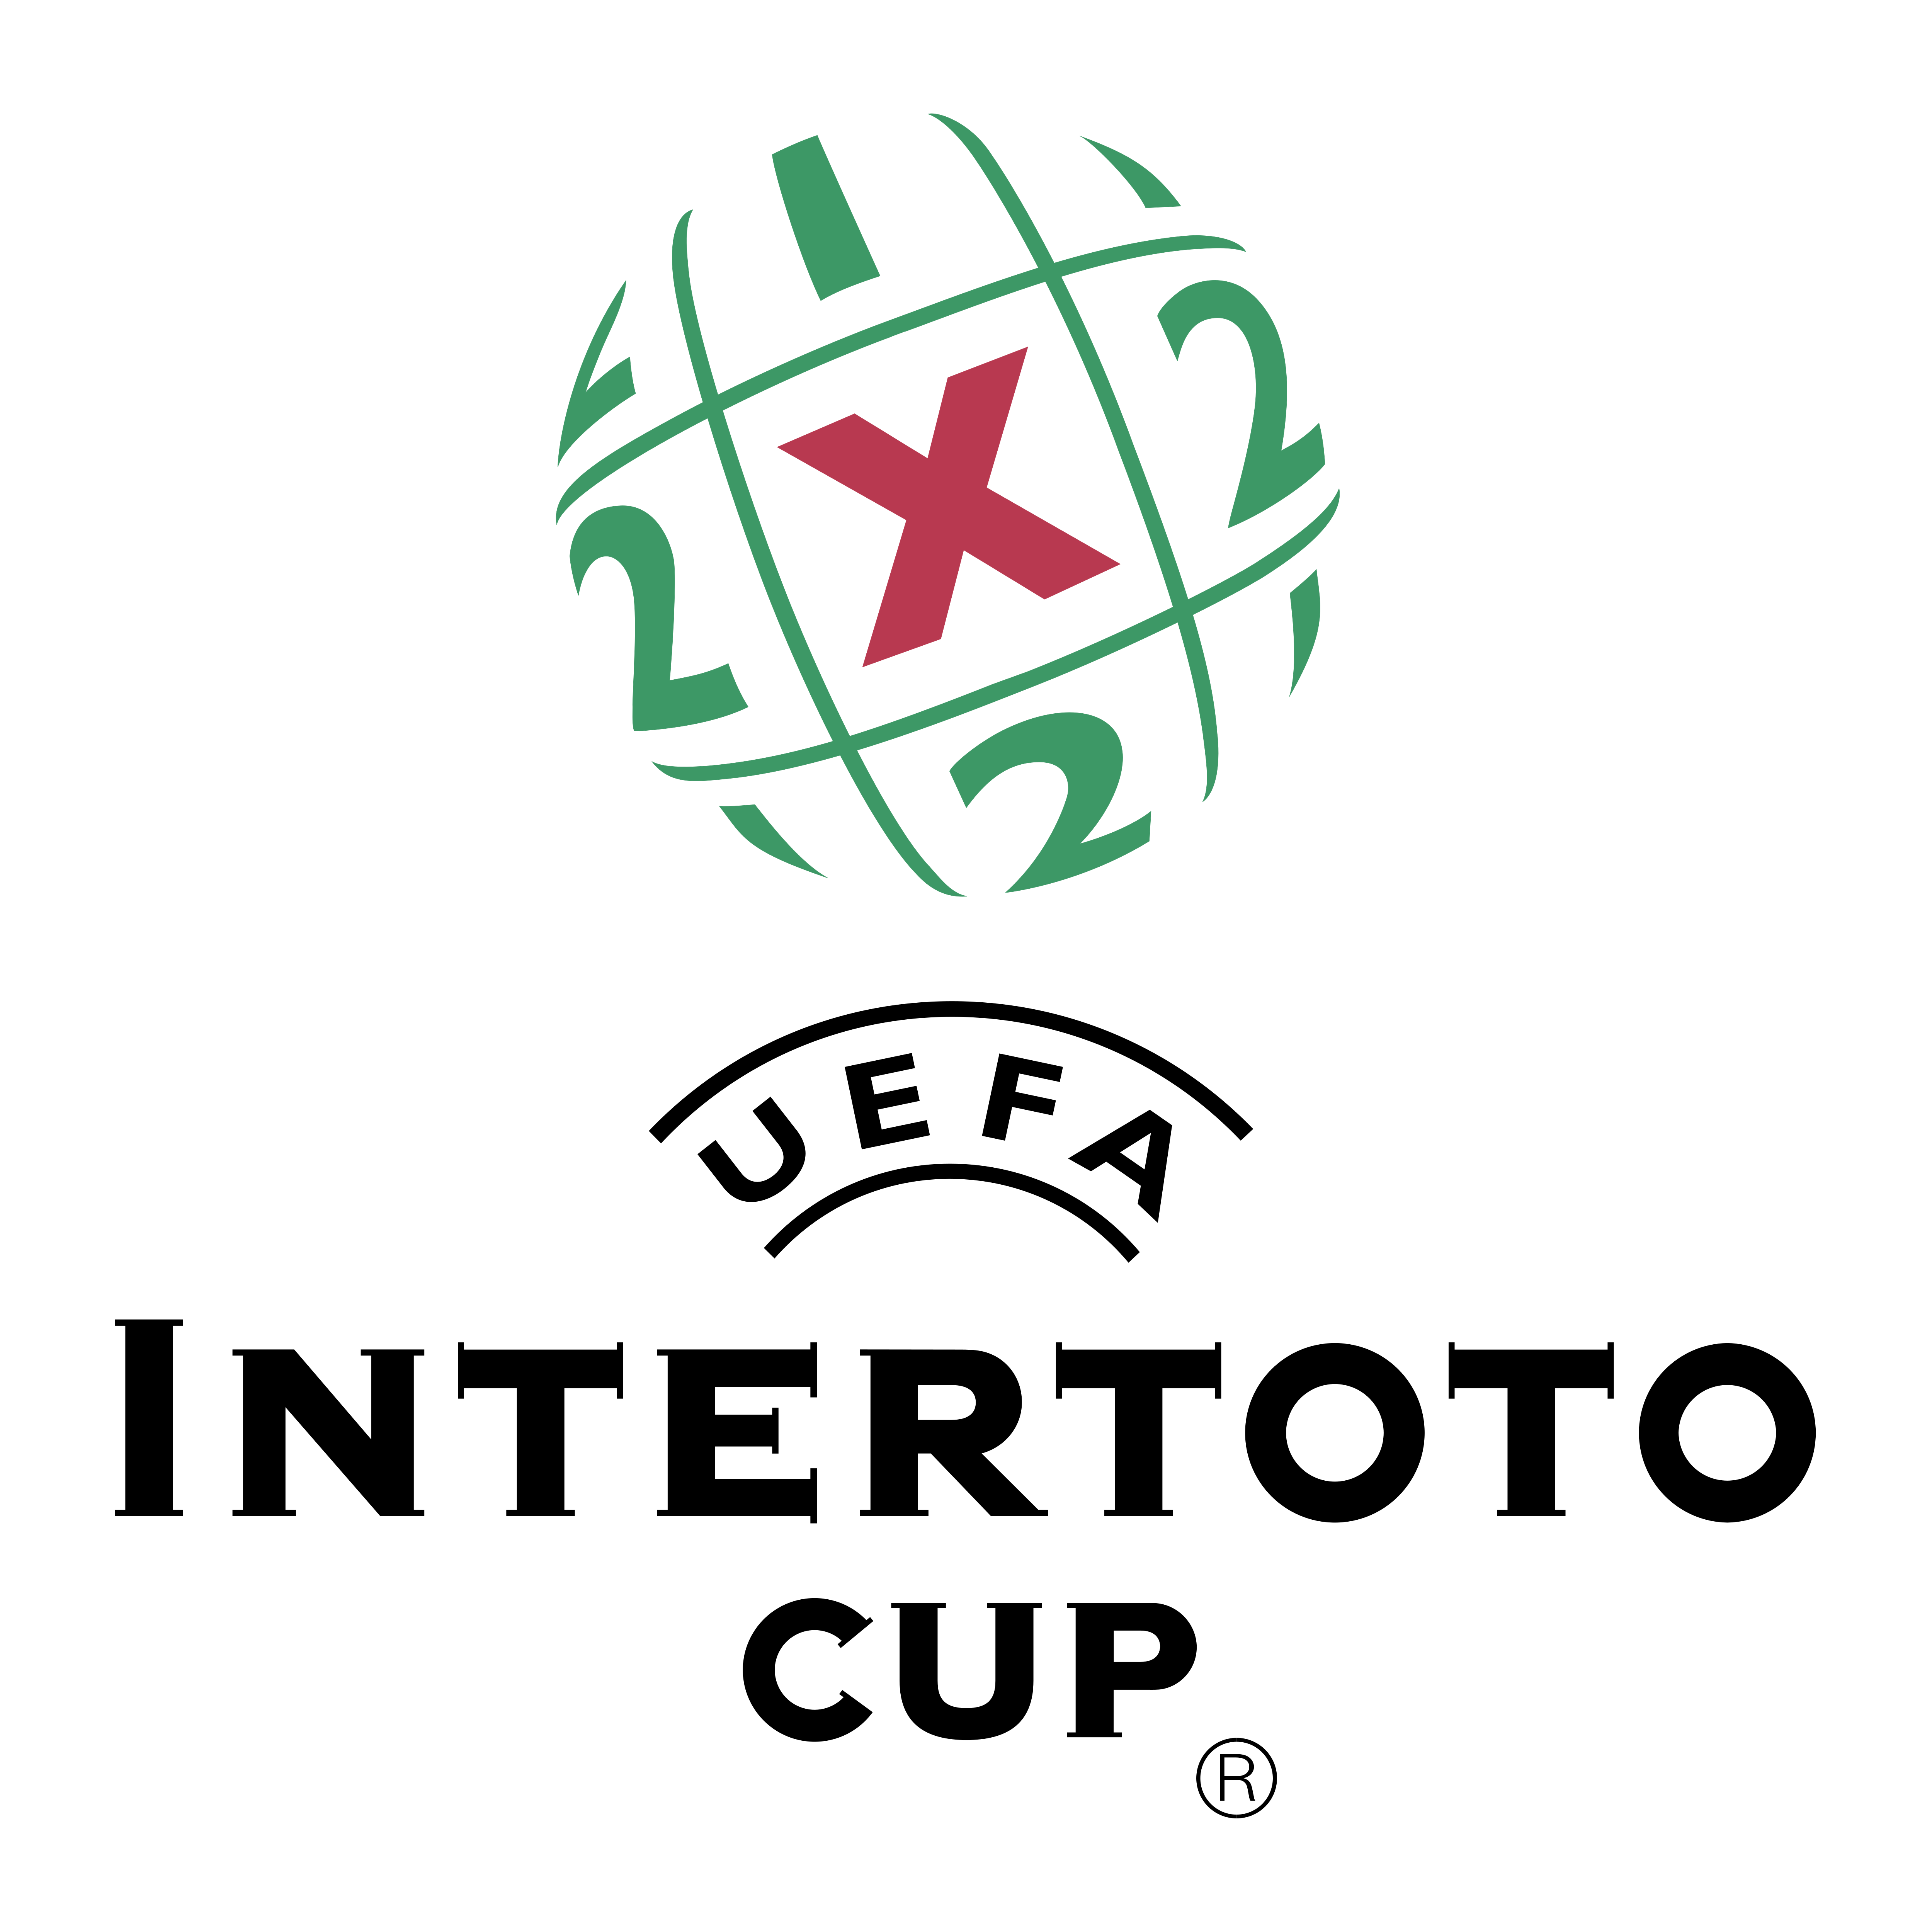 UEFA Intertoto cup